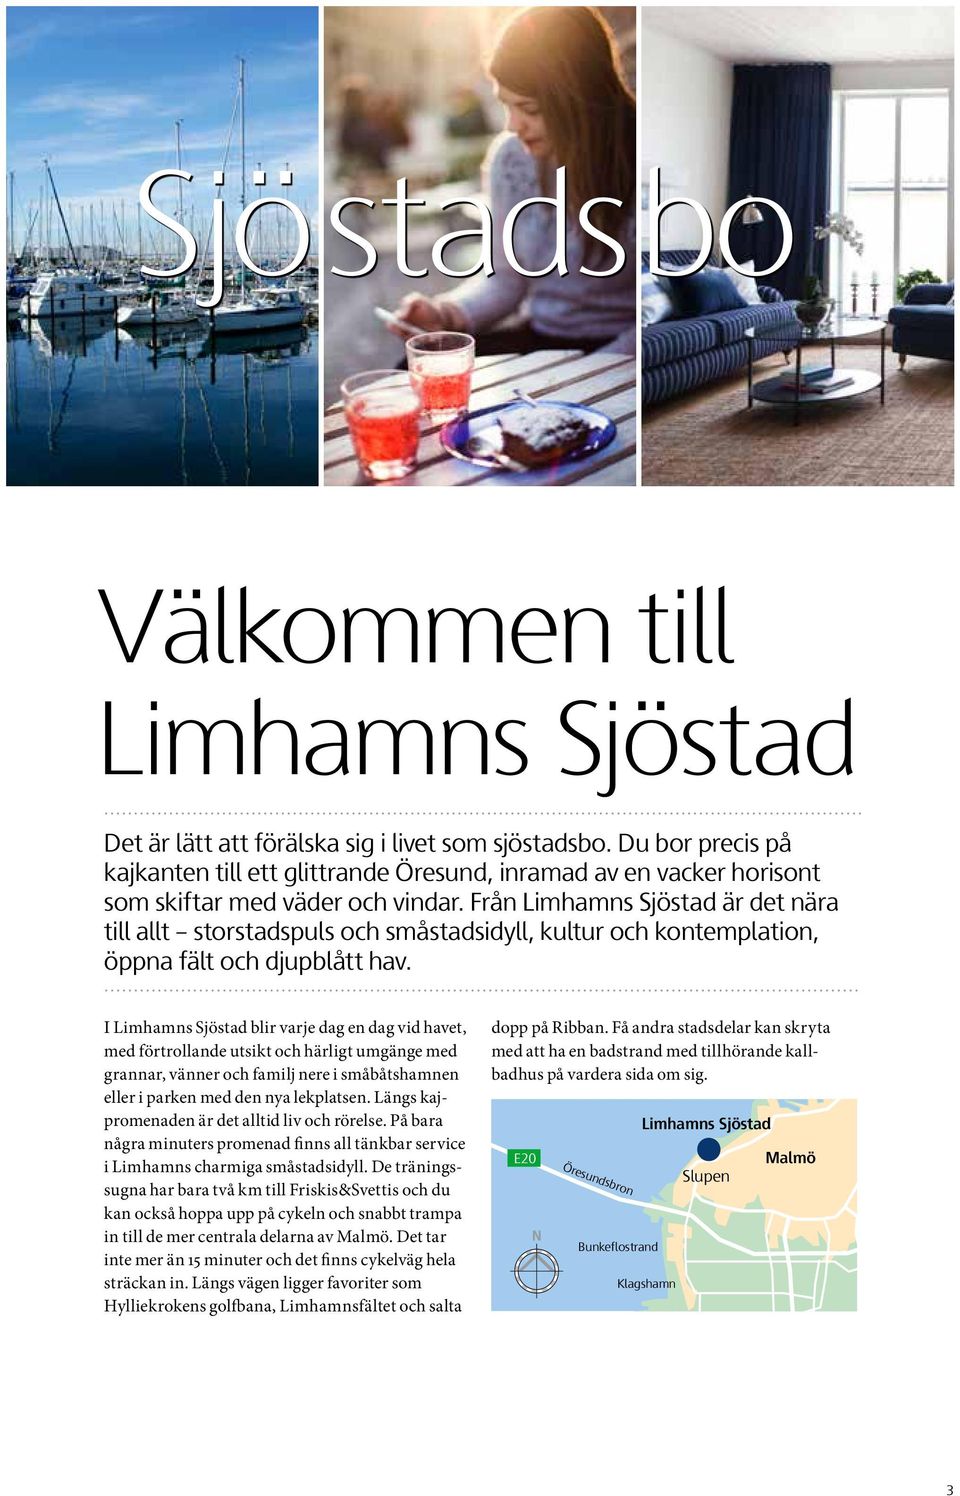 Från Limhamns Sjöstad är det nära till allt storstadspuls och småstadsidyll, kultur och kontemplation, öppna fält och djupblått hav.